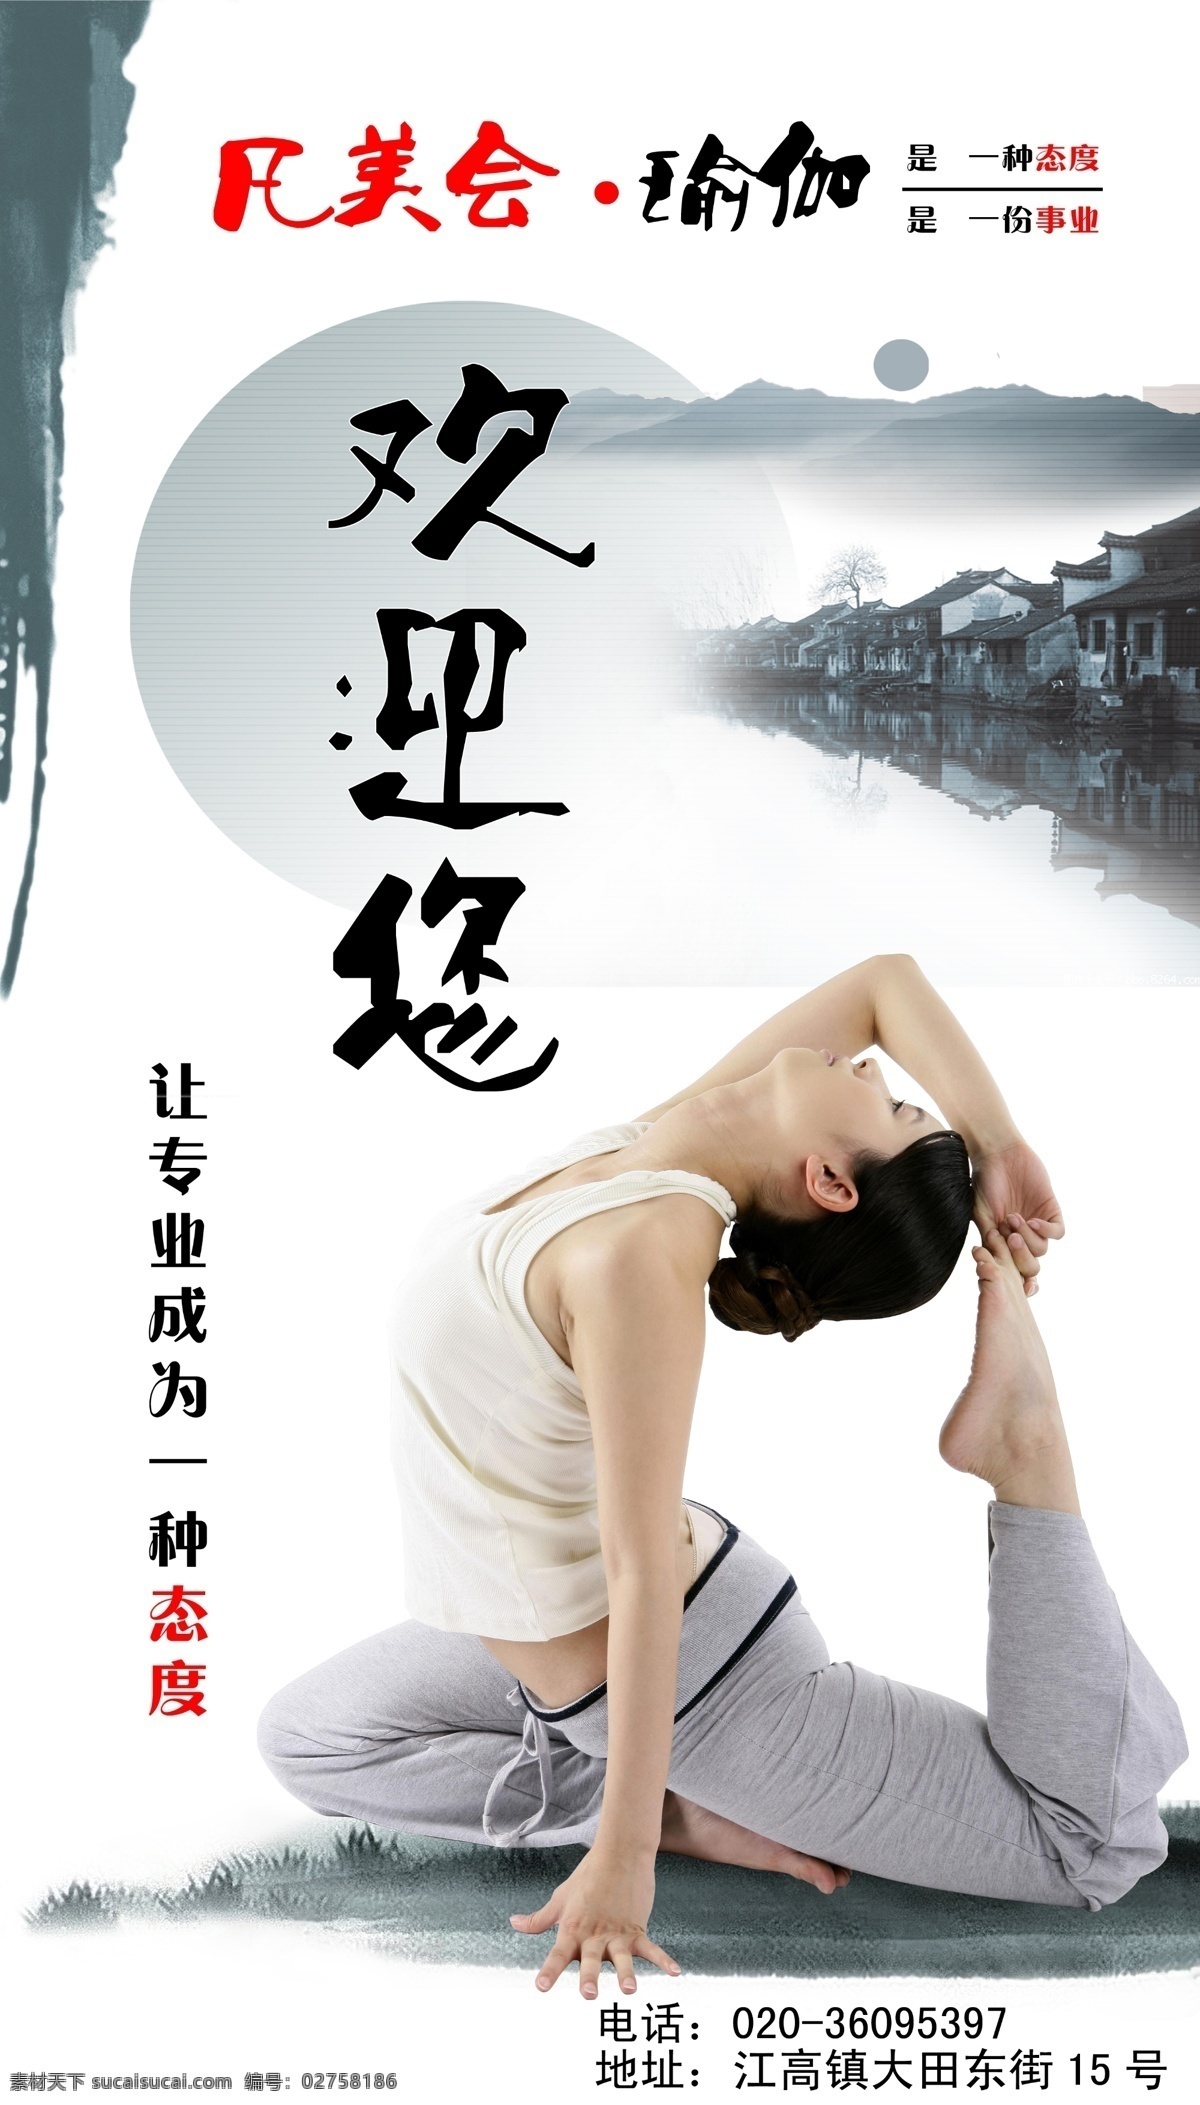 广告设计模板 静 瑜伽 源文件 中国风 中国 风 美女 模板下载 psd源文件